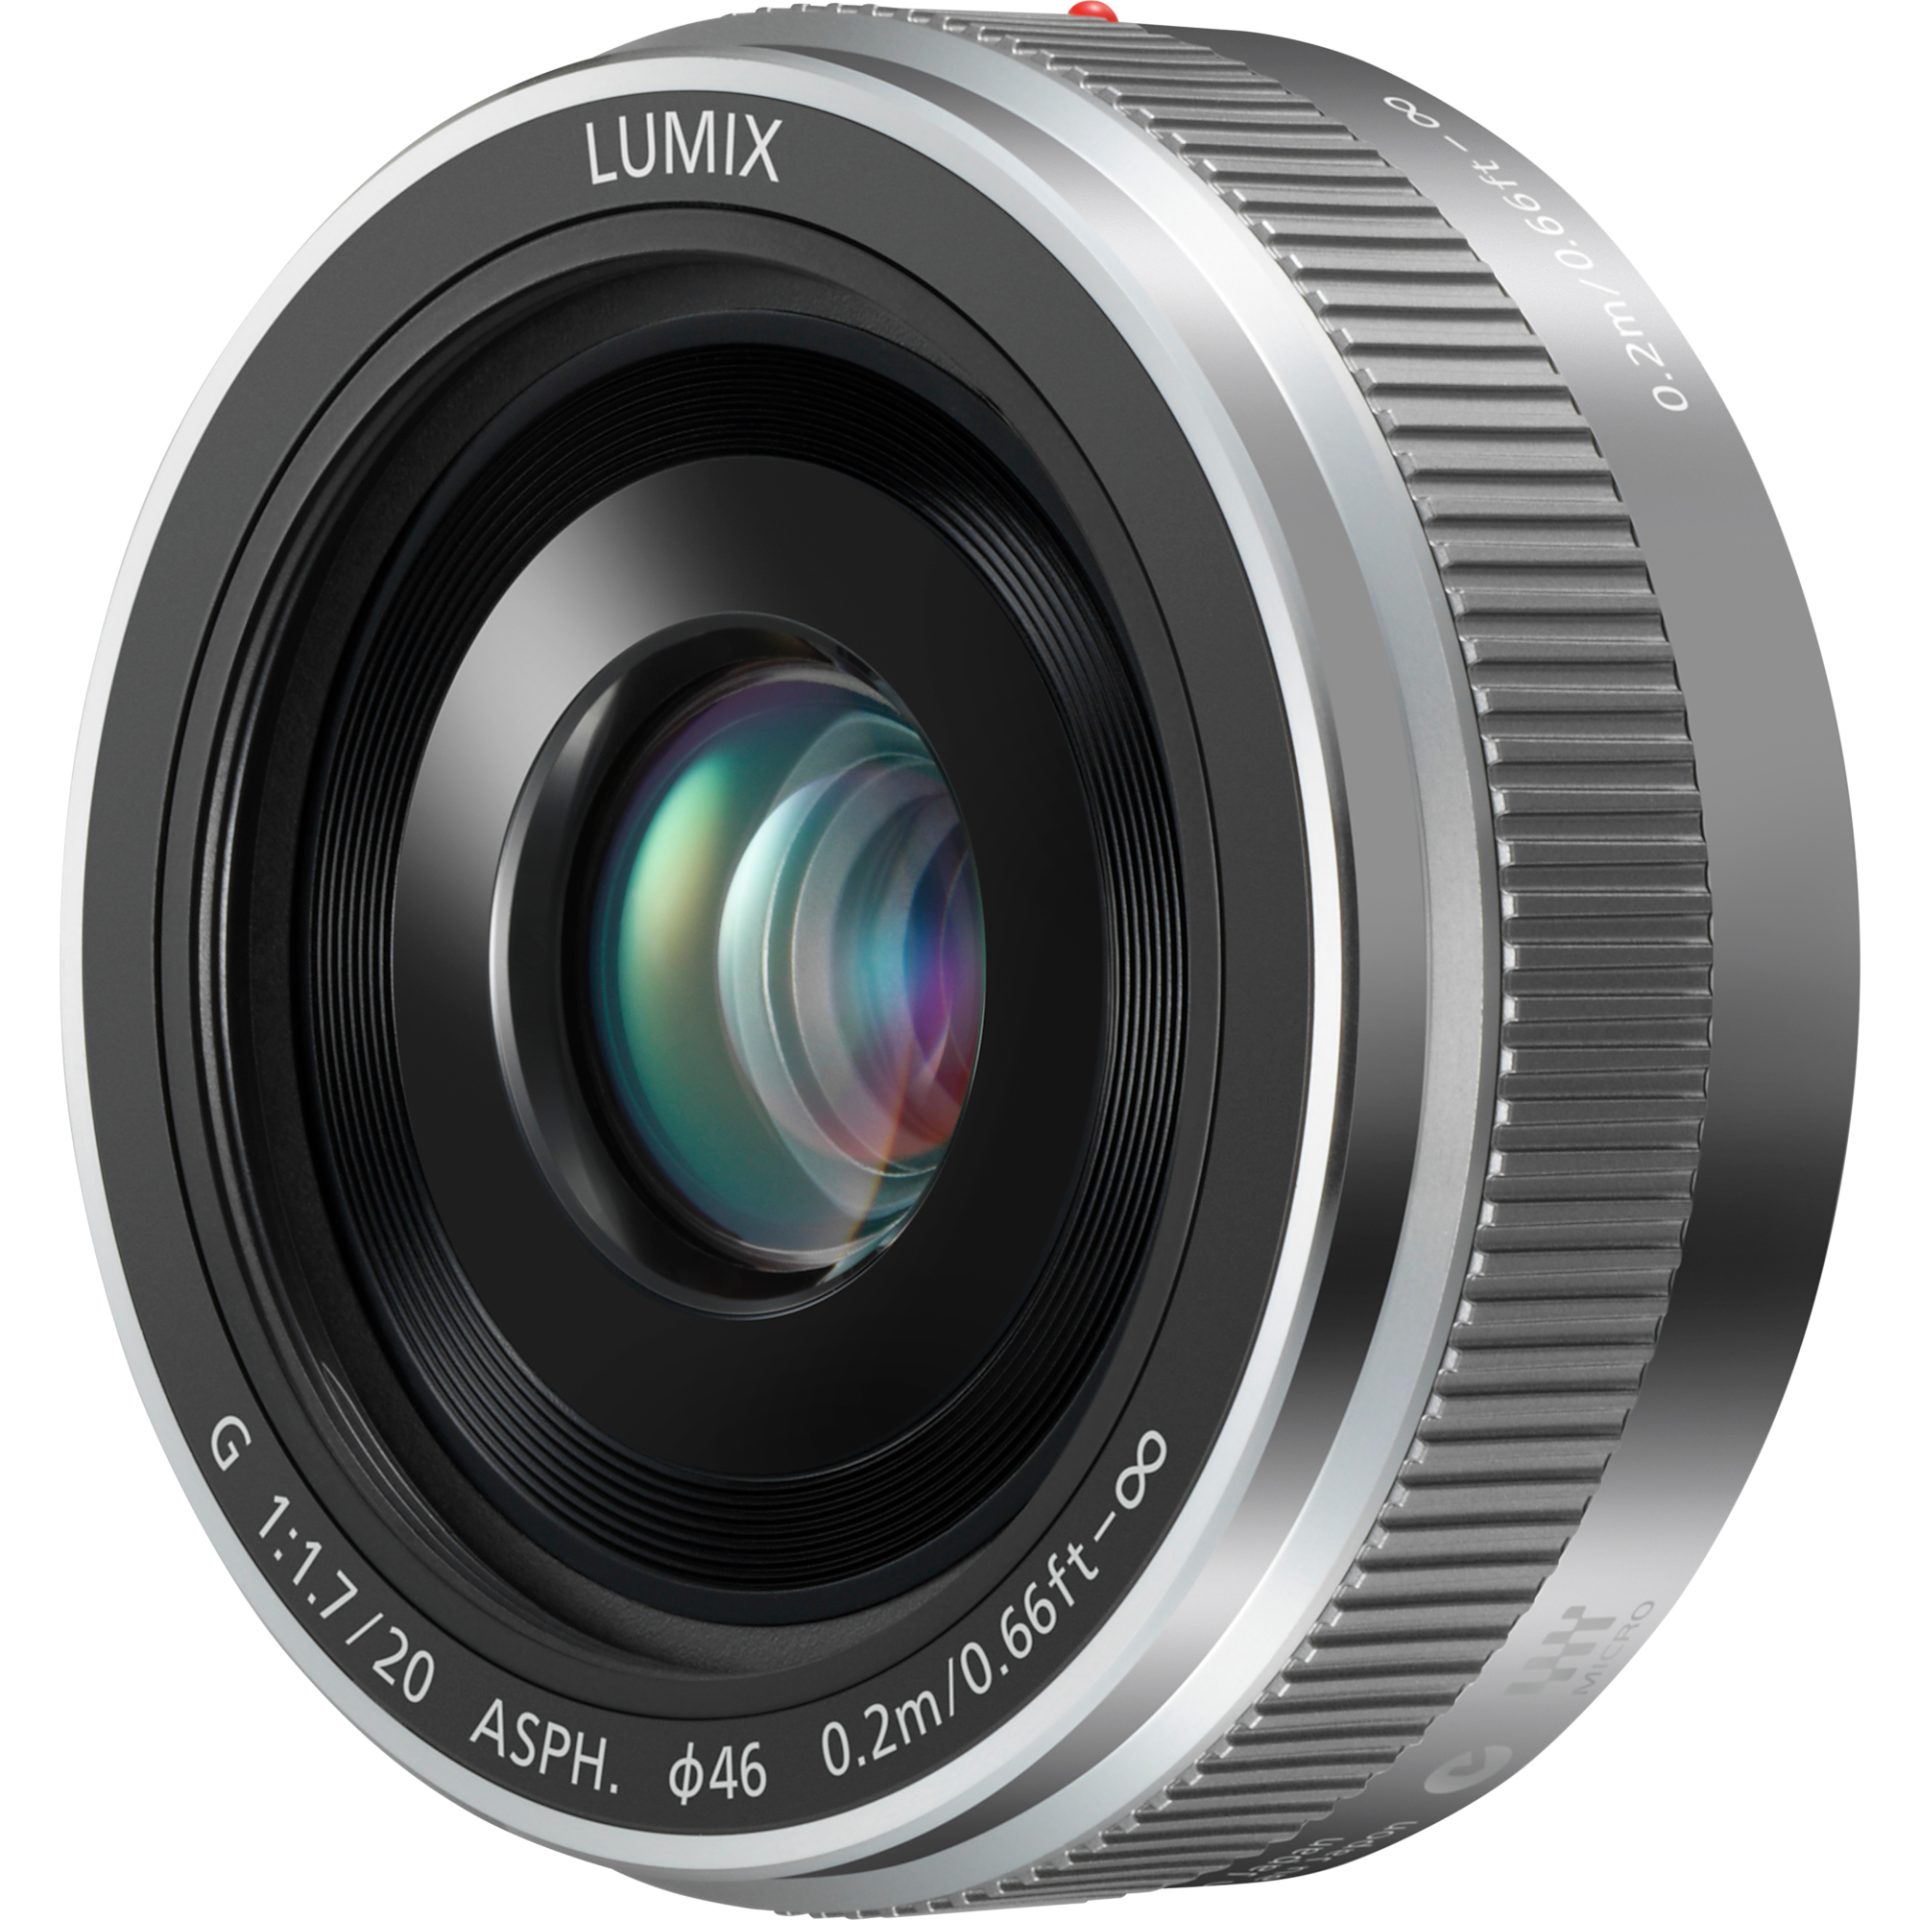 Panasonic H-H020 LUMIX G širokoúhlý objektiv s pevnou ohniskovou vzdáleností (20mm (40mm ekv.kinofilmu), clona F1.7, filtr 46mm, micro 4/3), stříbrná